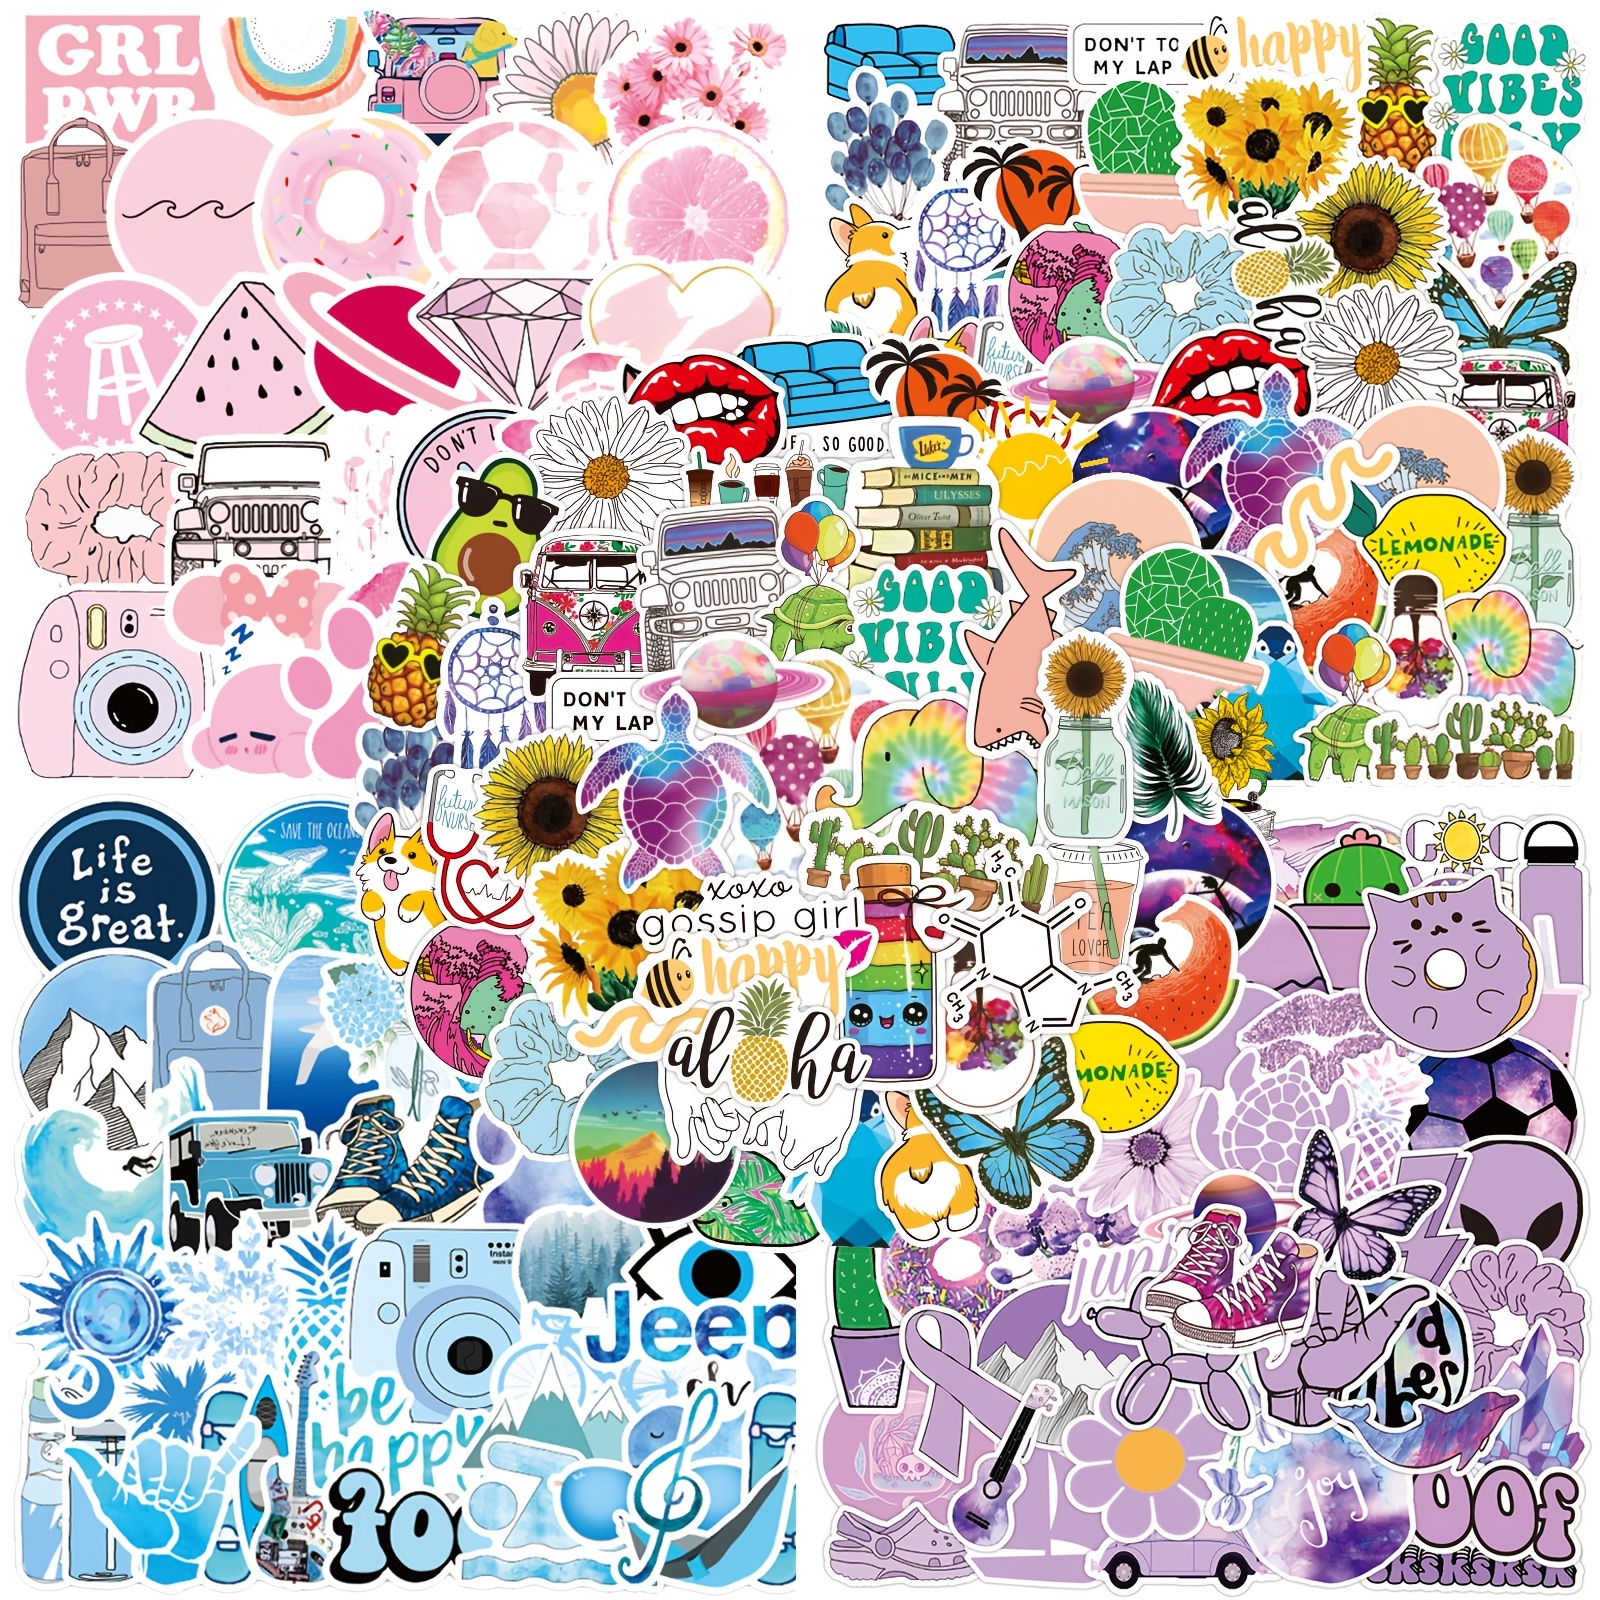 Kids Stickers Bulk,100pcs Cute Stickers For Kids Teens Girls Kids  Adults,waterproof Vinyl Vsco Aesthetic Sticker Packs For Hydro Flask,  Laptop, Water